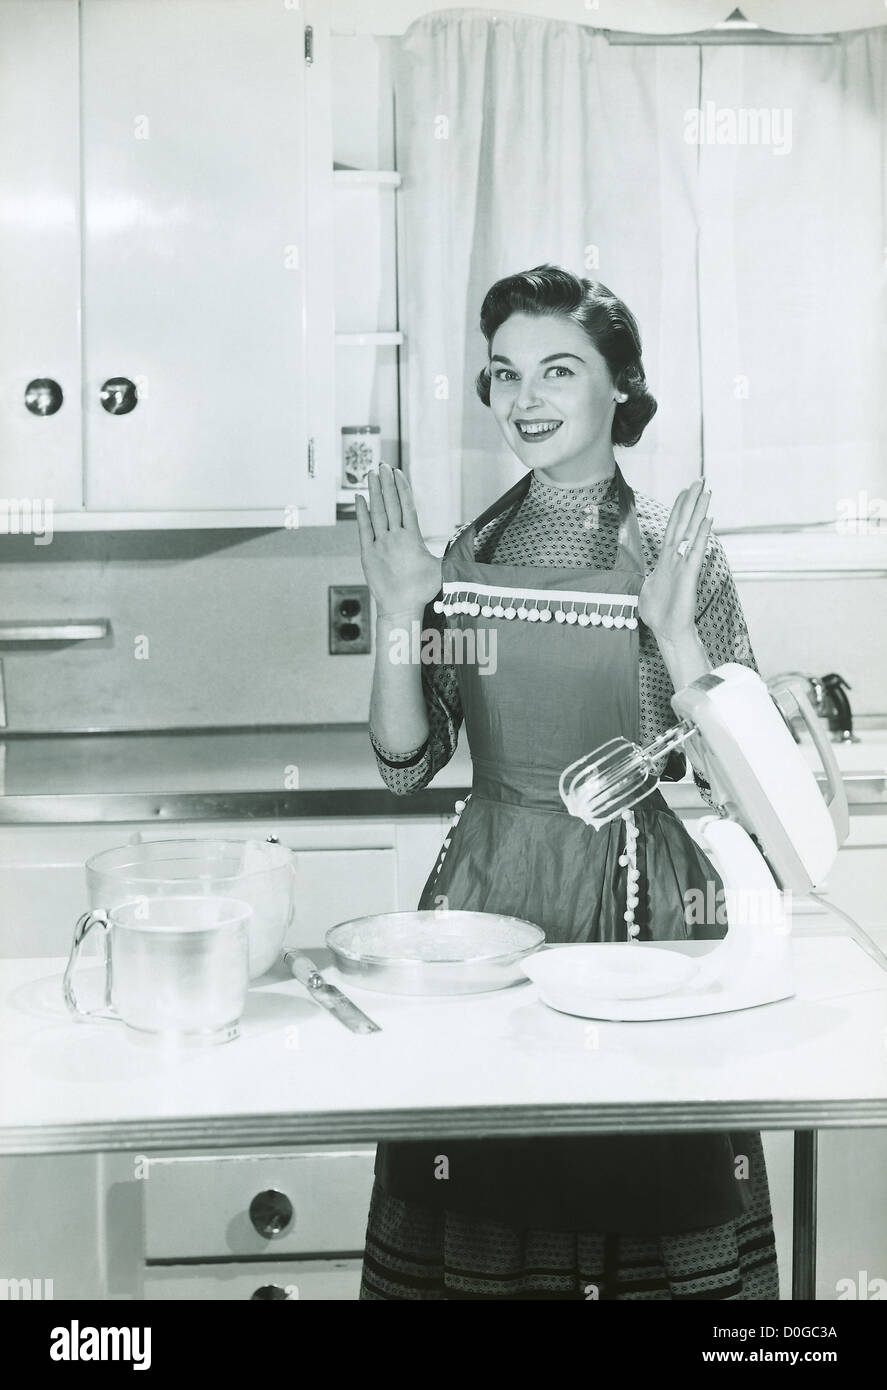 Bianco E Nero Stampa Vintage Di Una Donna In Cucina Foto Stock Alamy